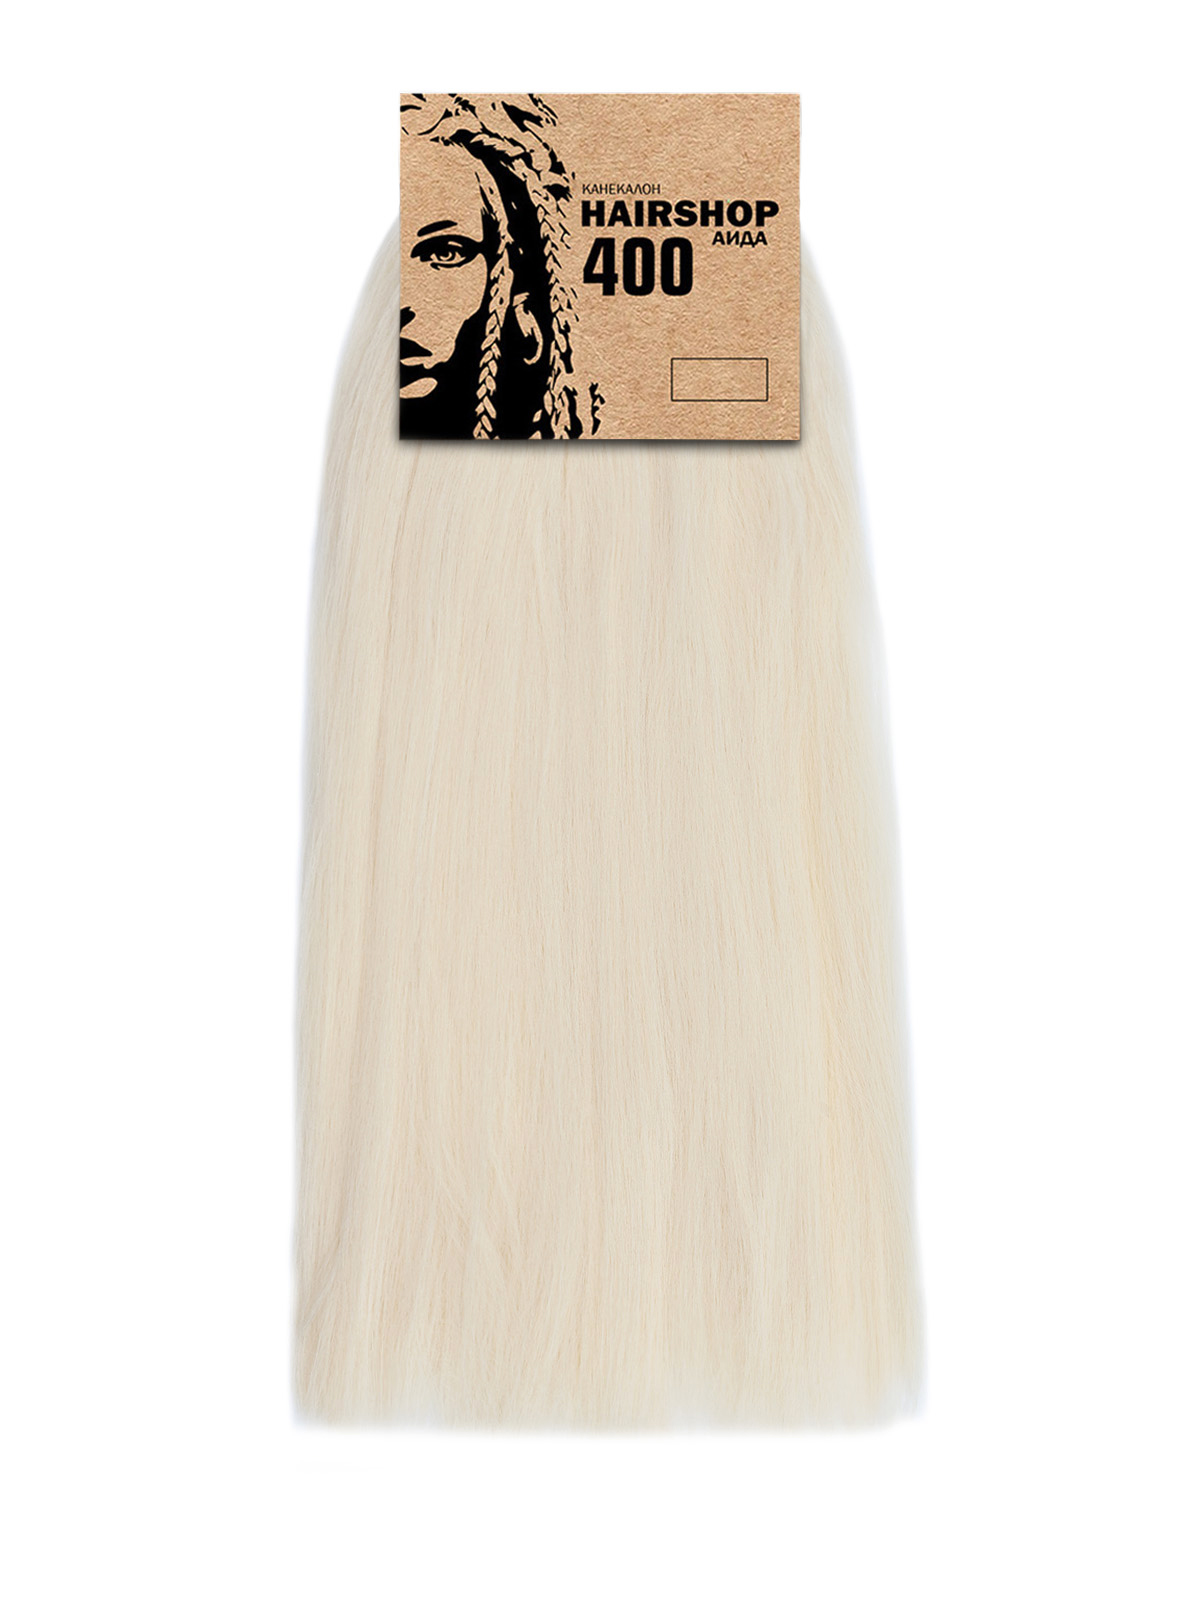 Канекалон Hairshop Аида 400г цвет 303 Светлый блонд канекалон hairshop вау джау 4 613 1 3м 100г темный шоколад блонд